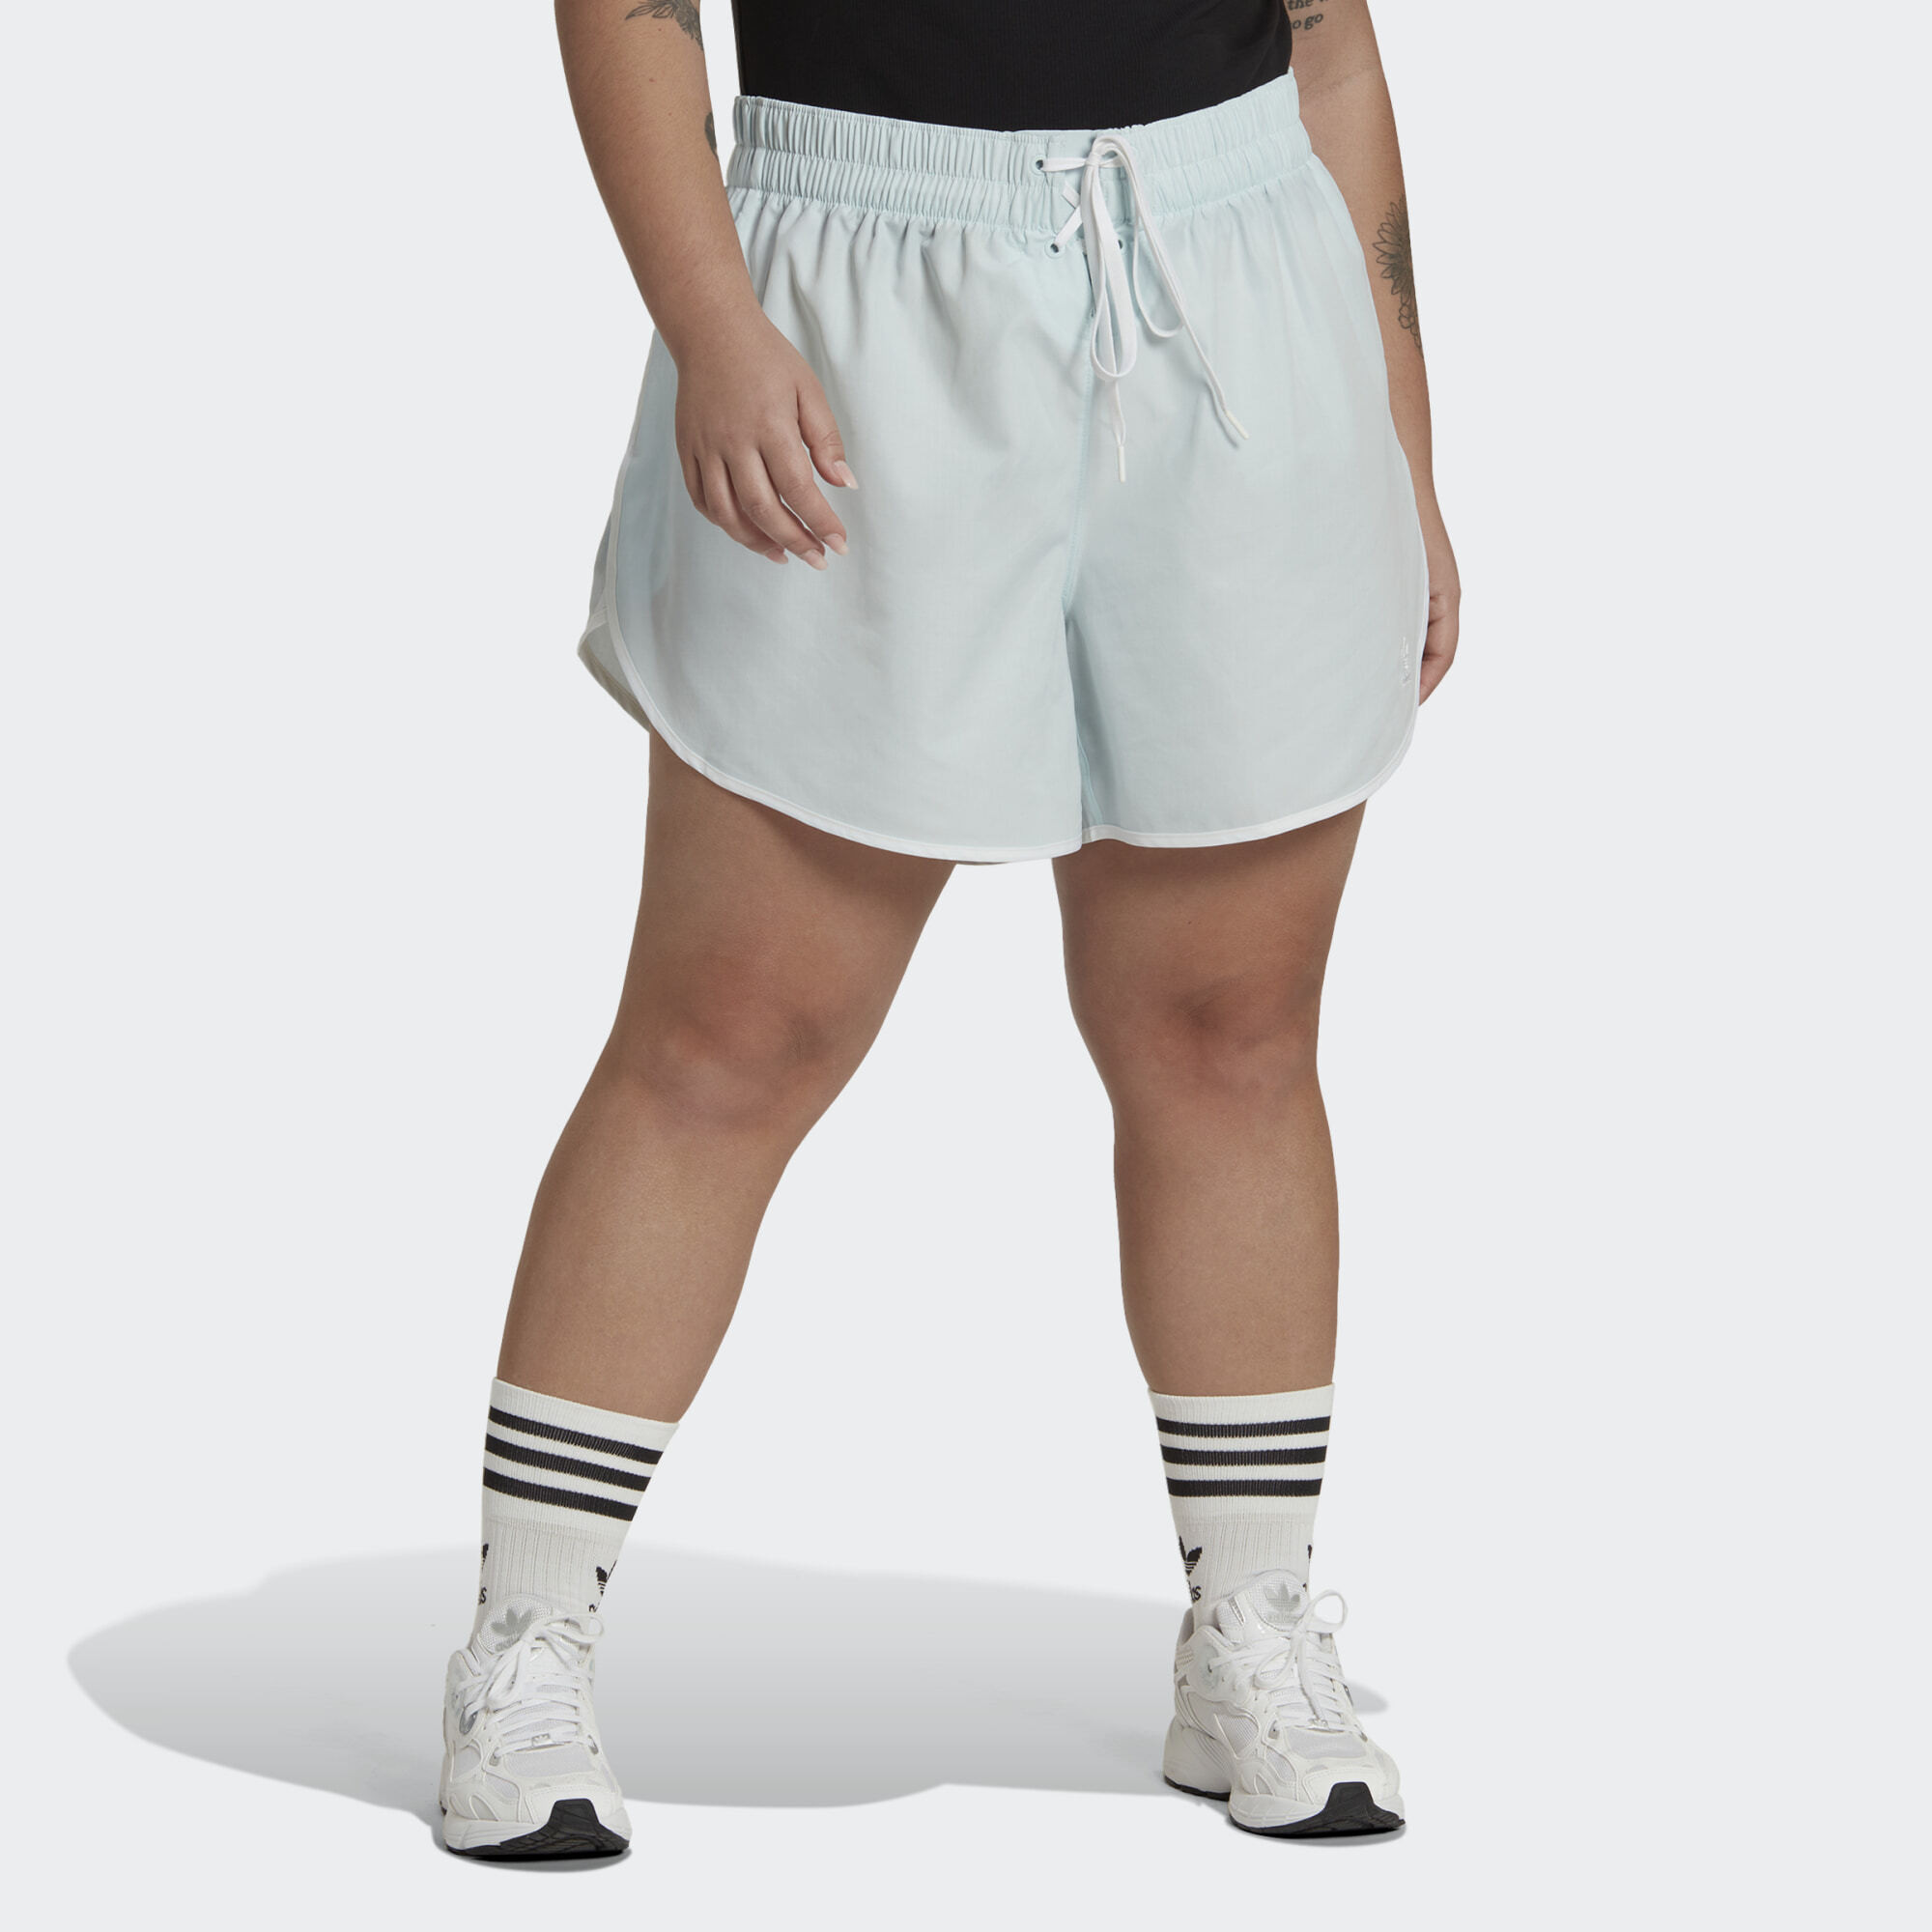 adidas Originals Always Original Laced Shorts (Plus Size) (9000128228_3024)